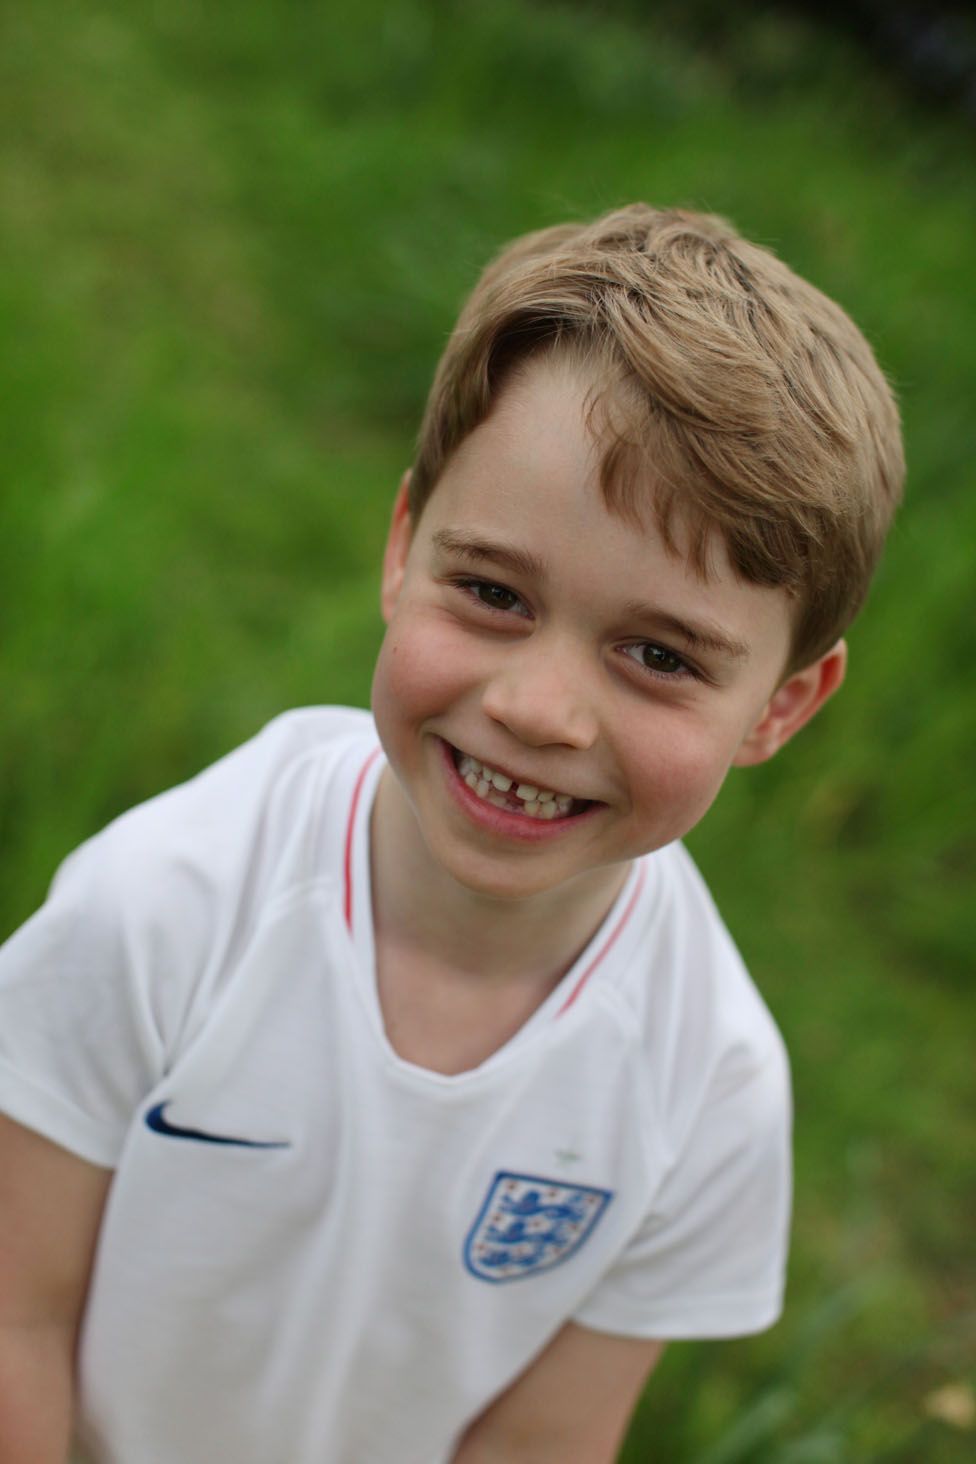 Принцу Джорджу шесть лет. Новые фотографии маленького принца - BBC ...